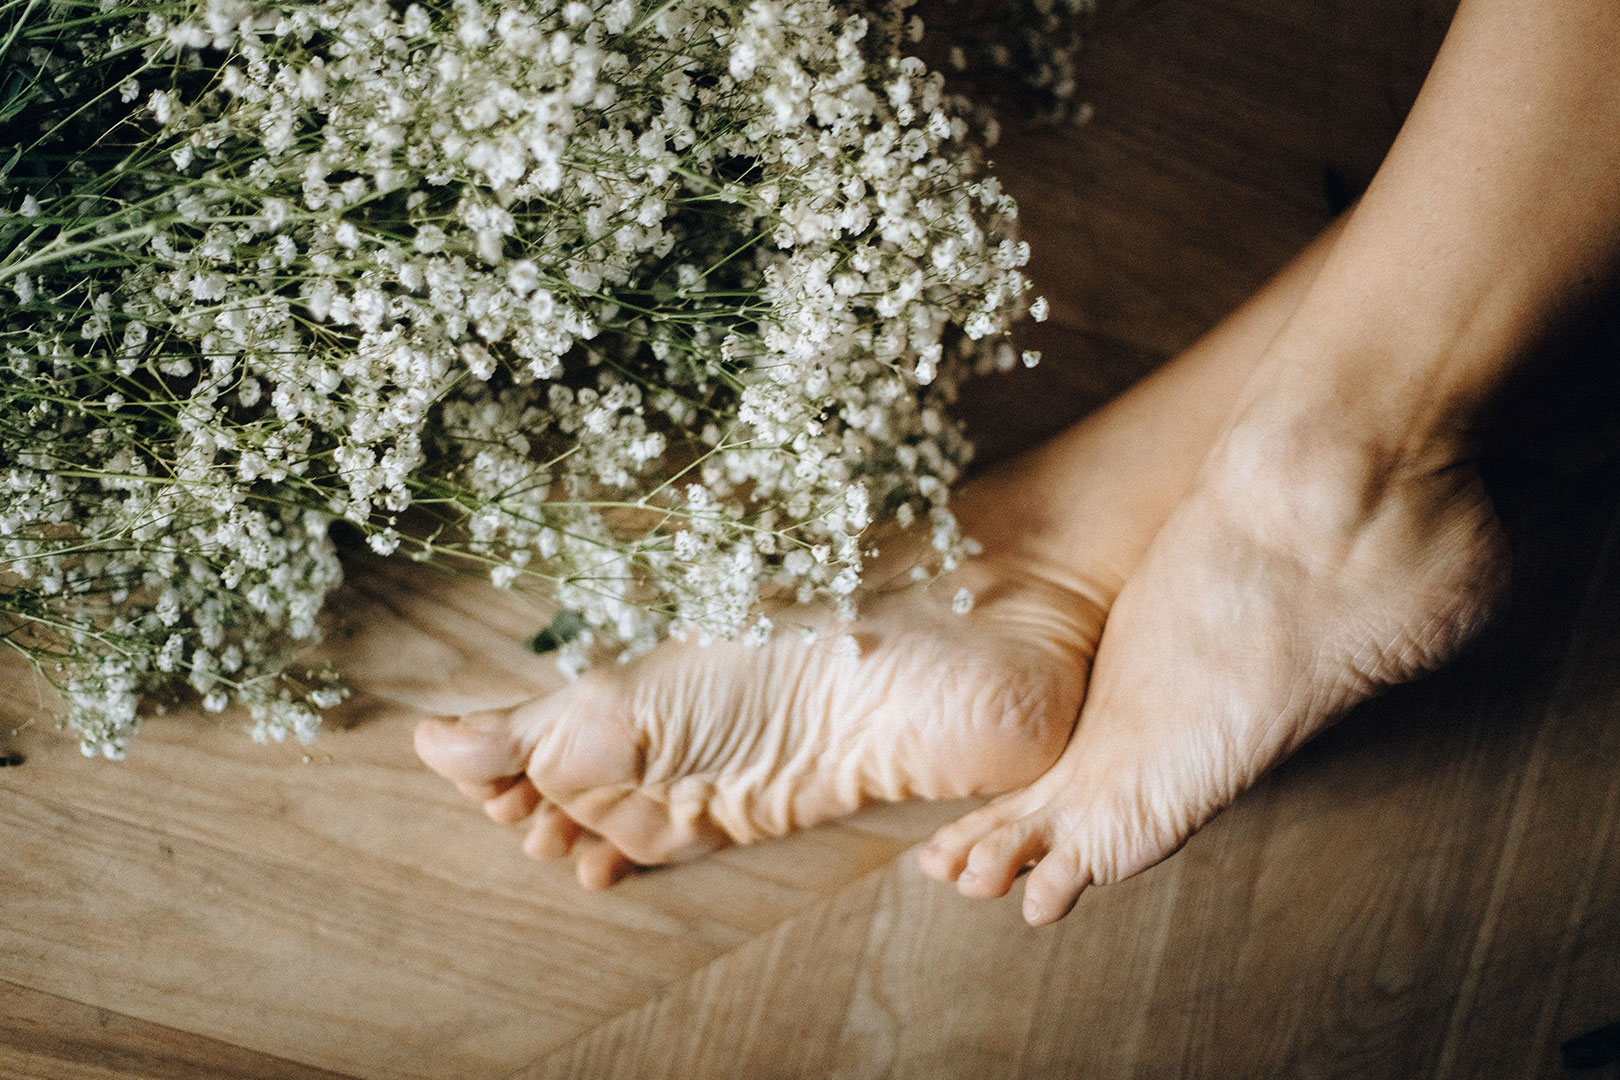 Pied nu sur un parquet avec des fleurs blanches seches